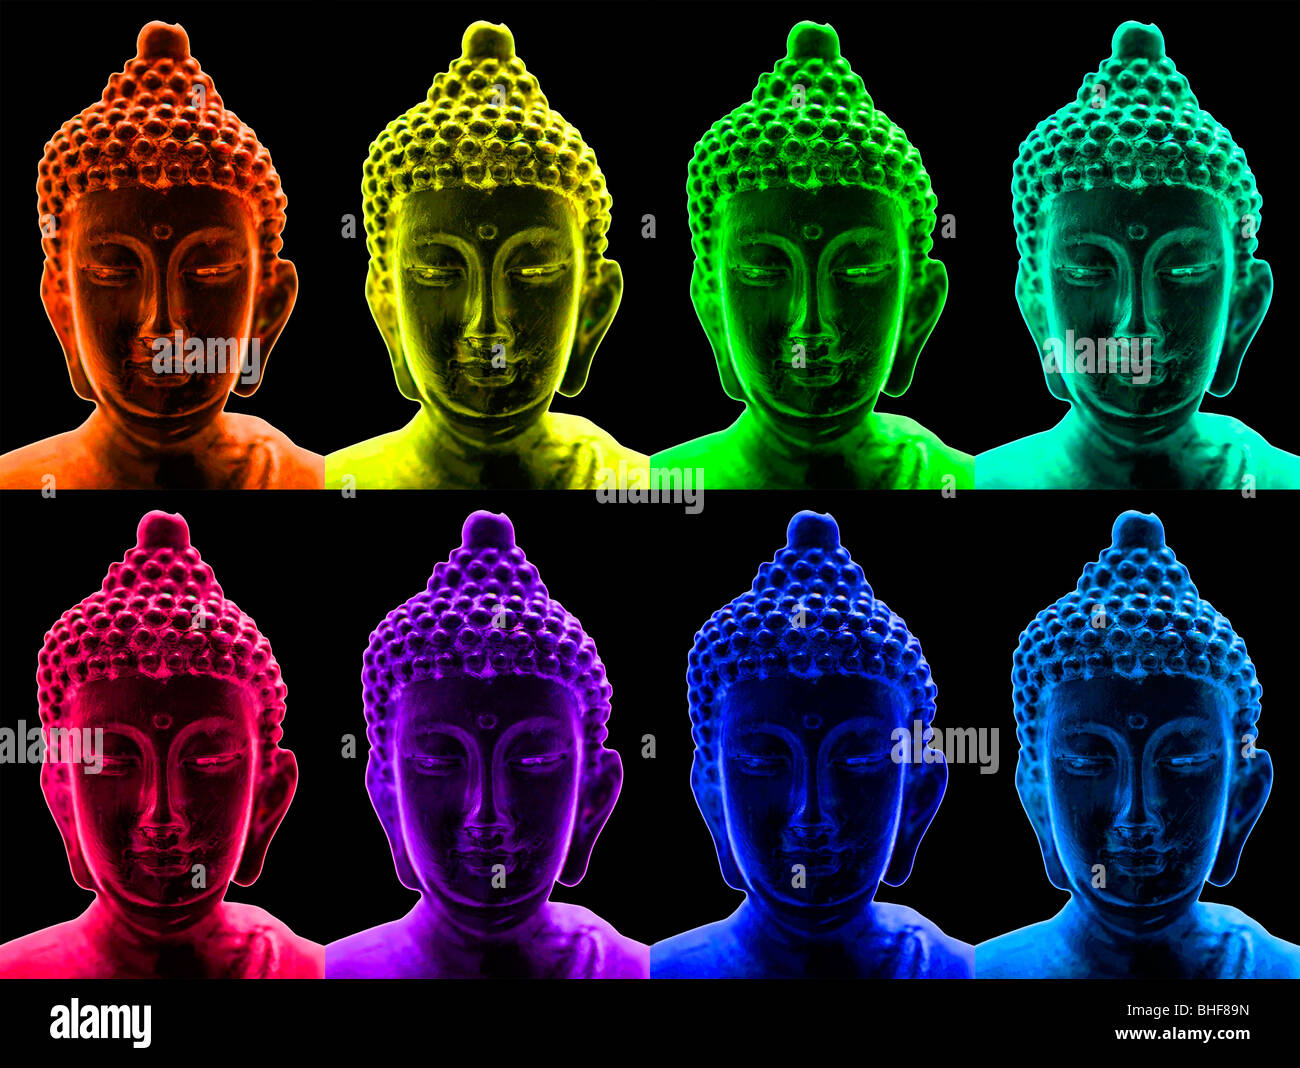 Portraits de Bouddha dans un style pop art Banque D'Images